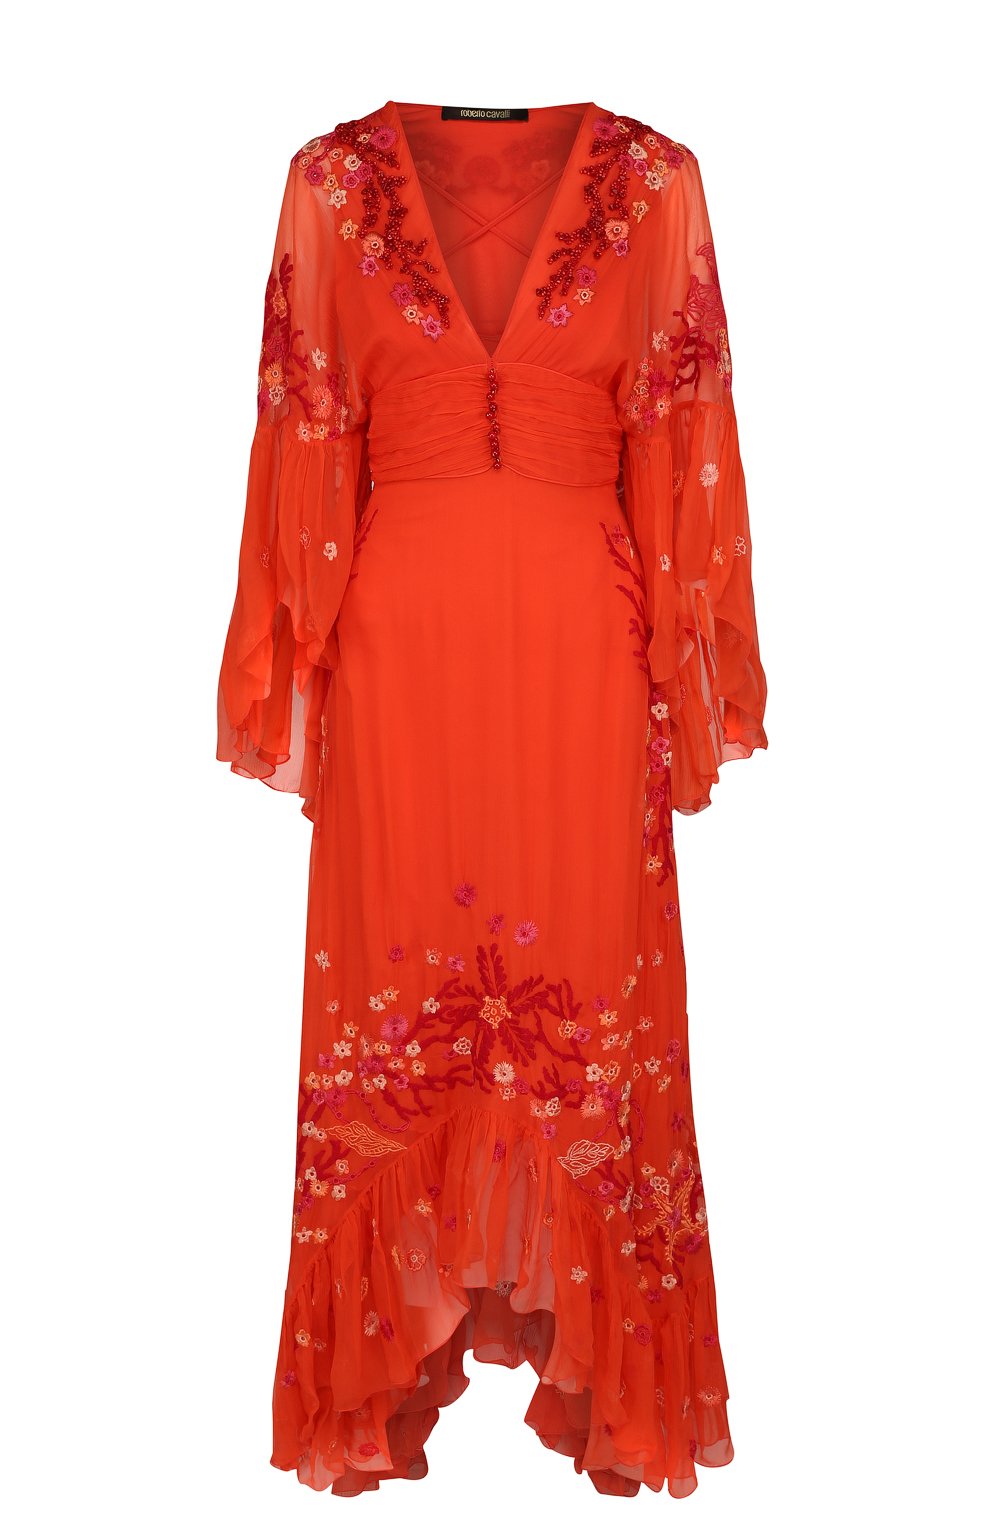 Приталенное шелковое платье асимметричного кроя Roberto Cavalli Розовый GQR117/CQ001 5255991